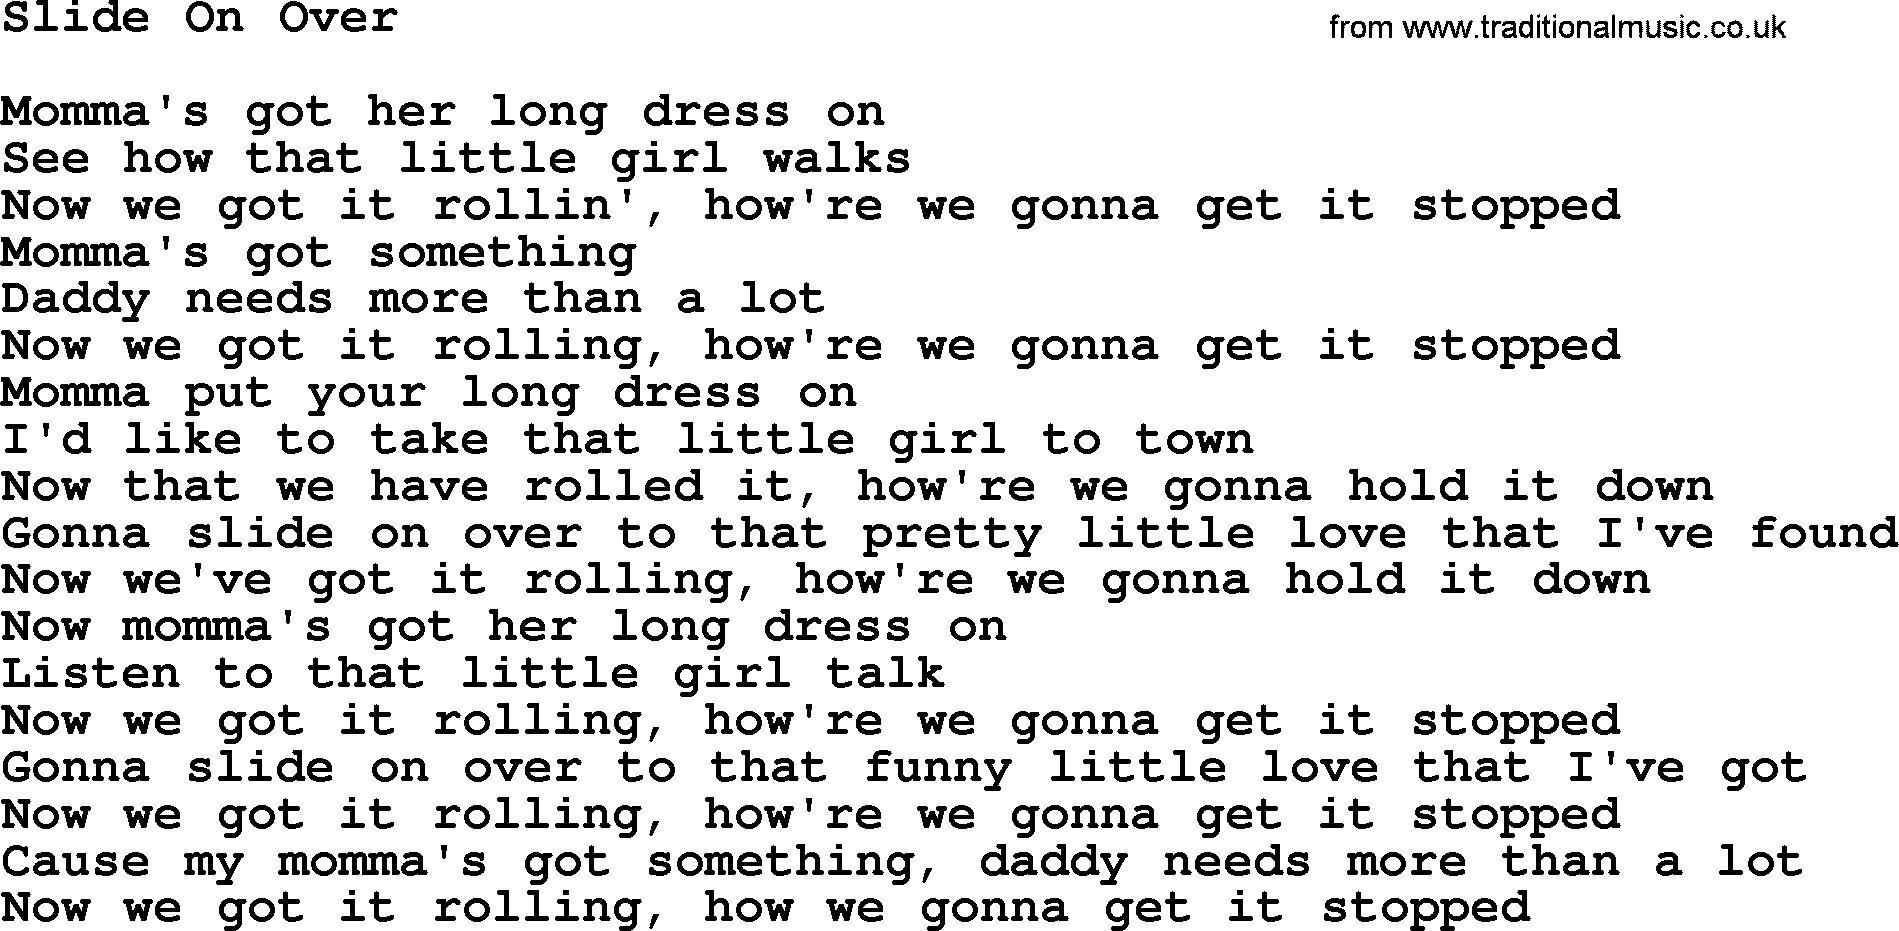 Gordon Lightfoot song Slide On Over, lyrics